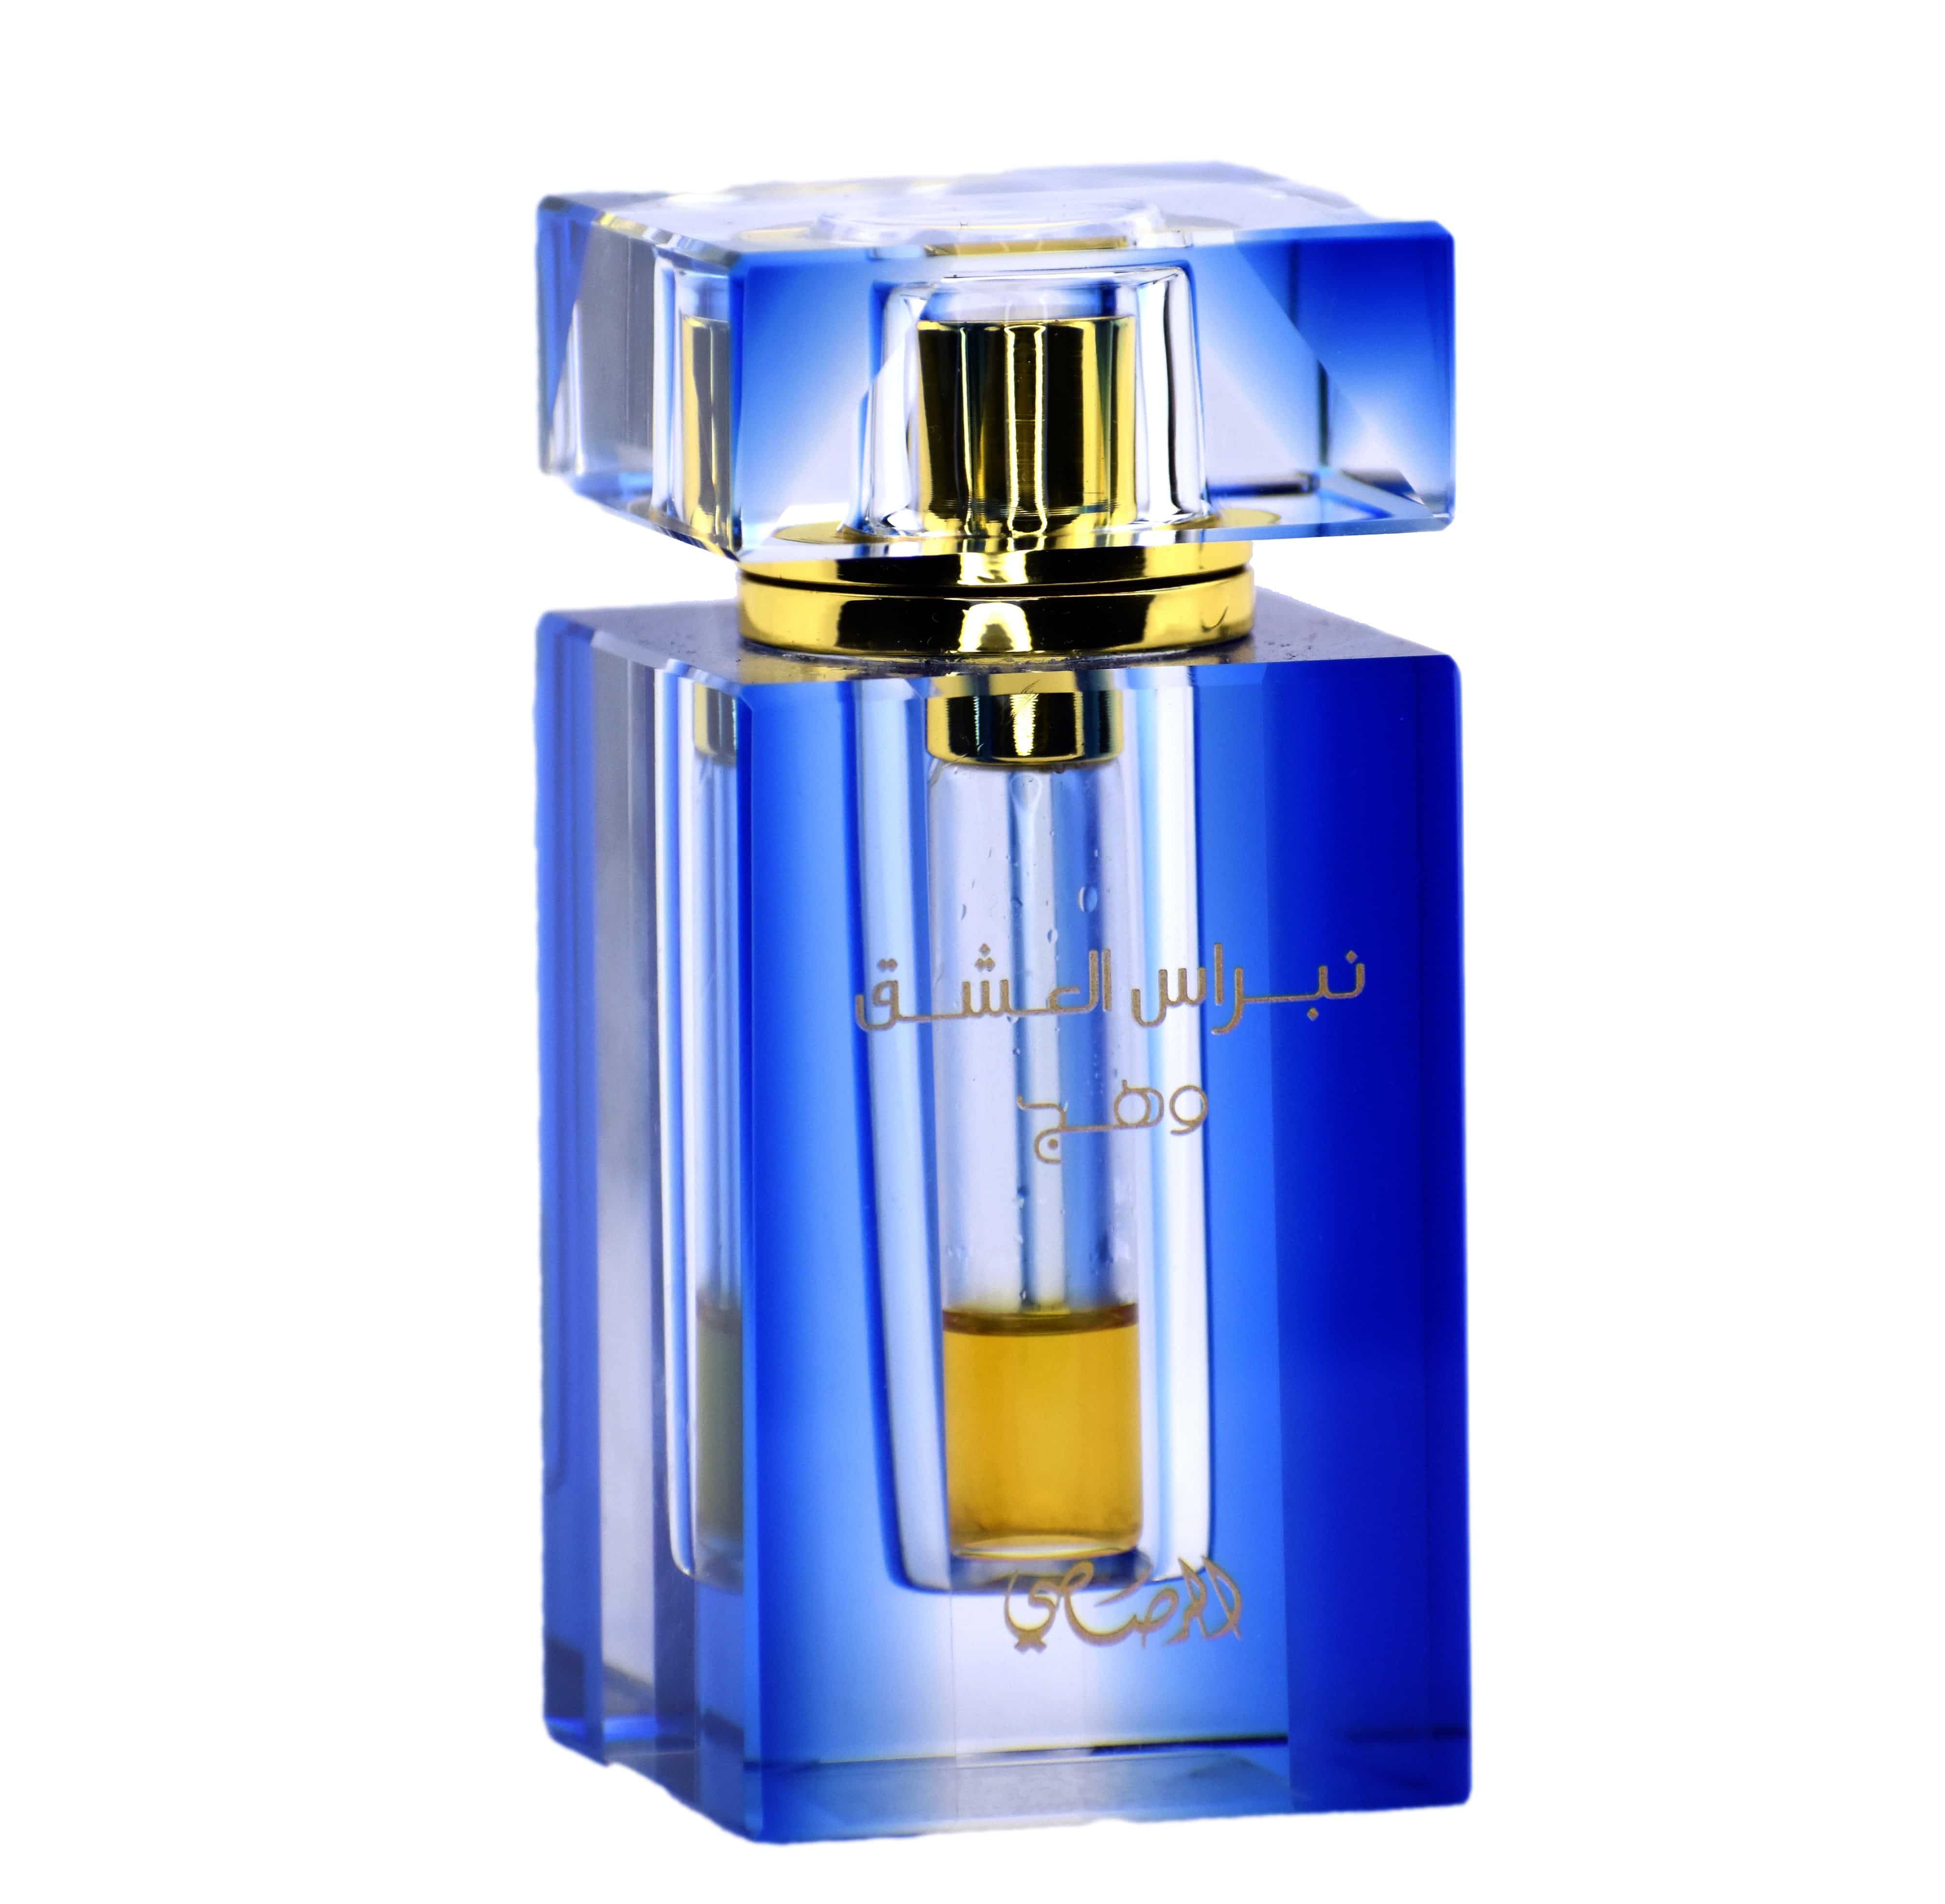 Nebras Al Ishq Wahaj Perfume Oil - 6 ML (0.2 oz) by Rasasi - Intense oud